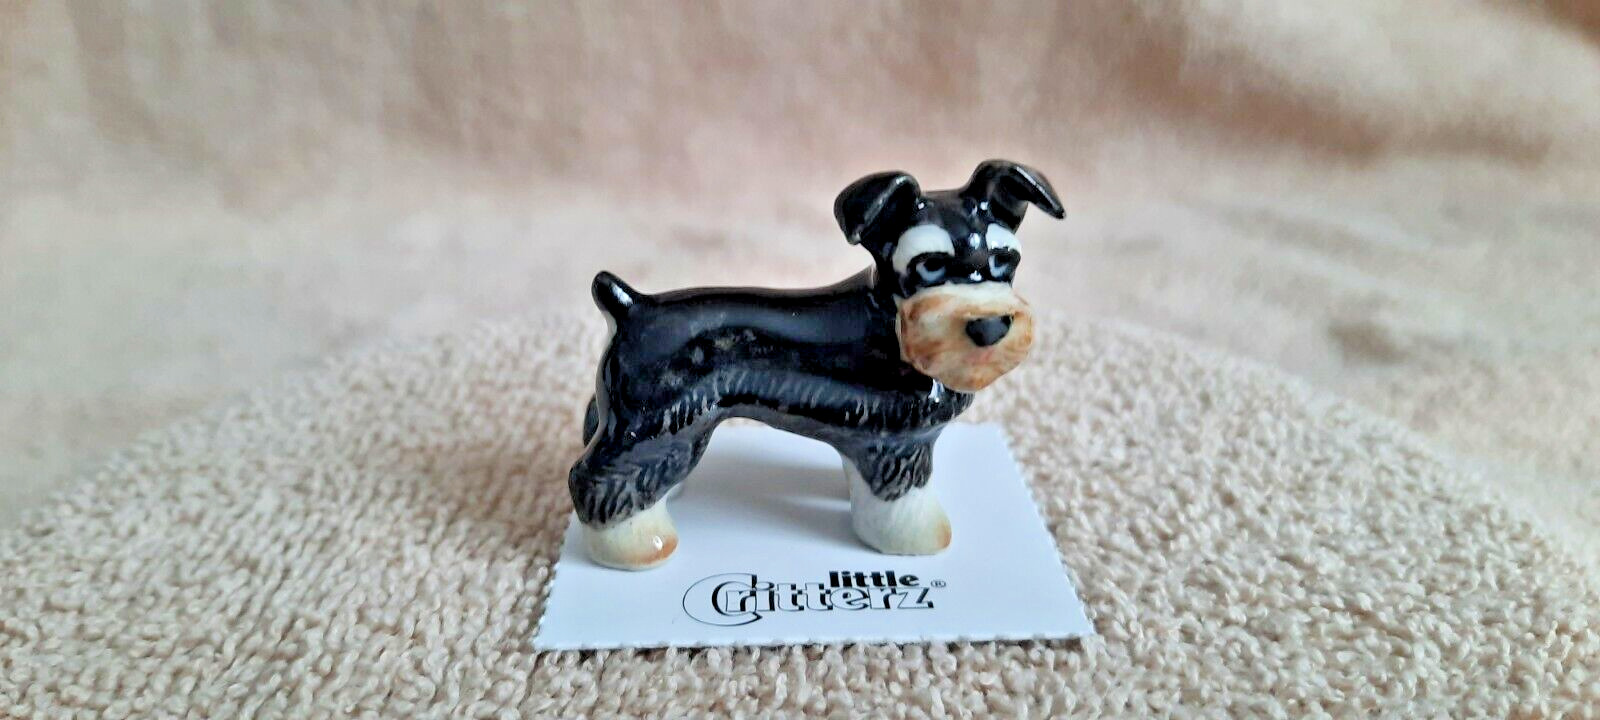 LITTLE CRITTERZ Dog Miniature Schnauzer \